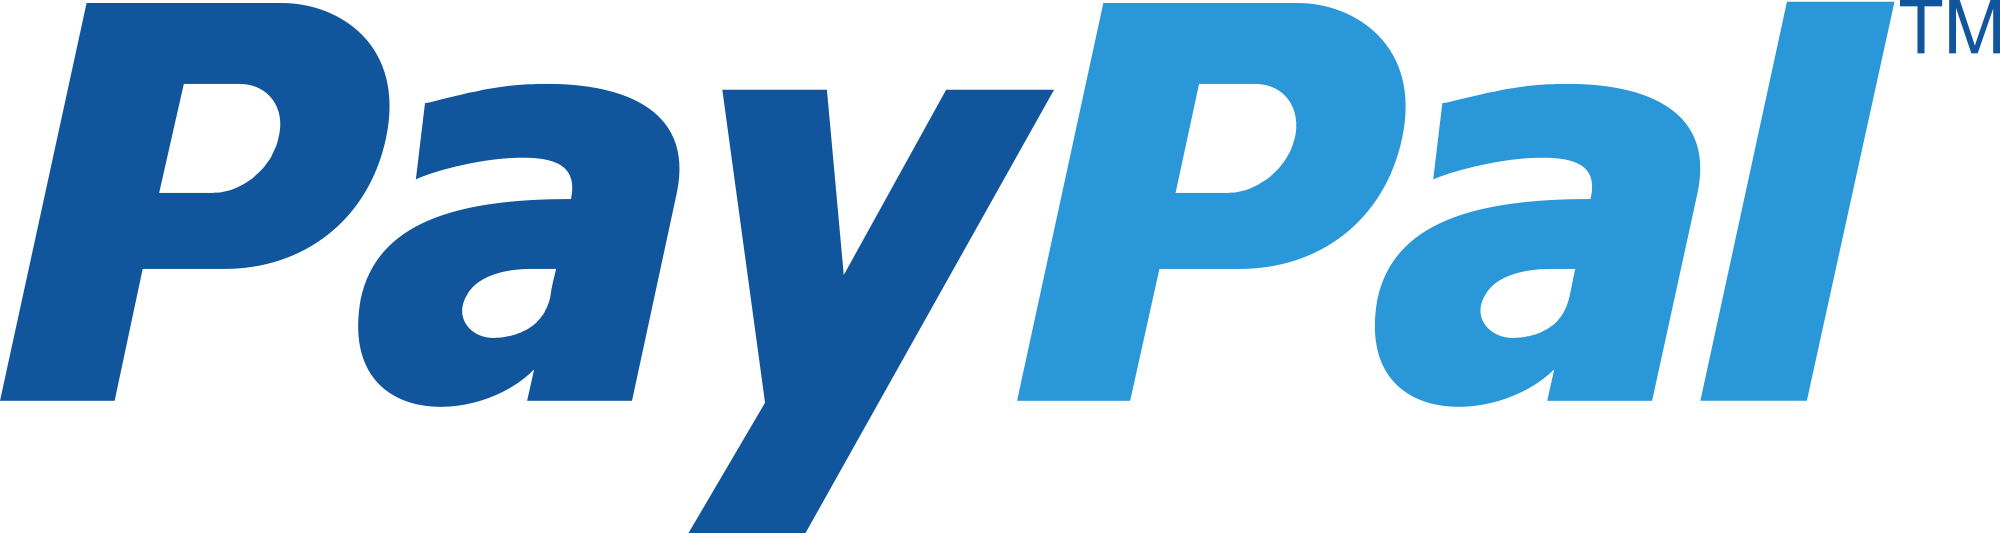 Paypal Logotype PNG - 105232